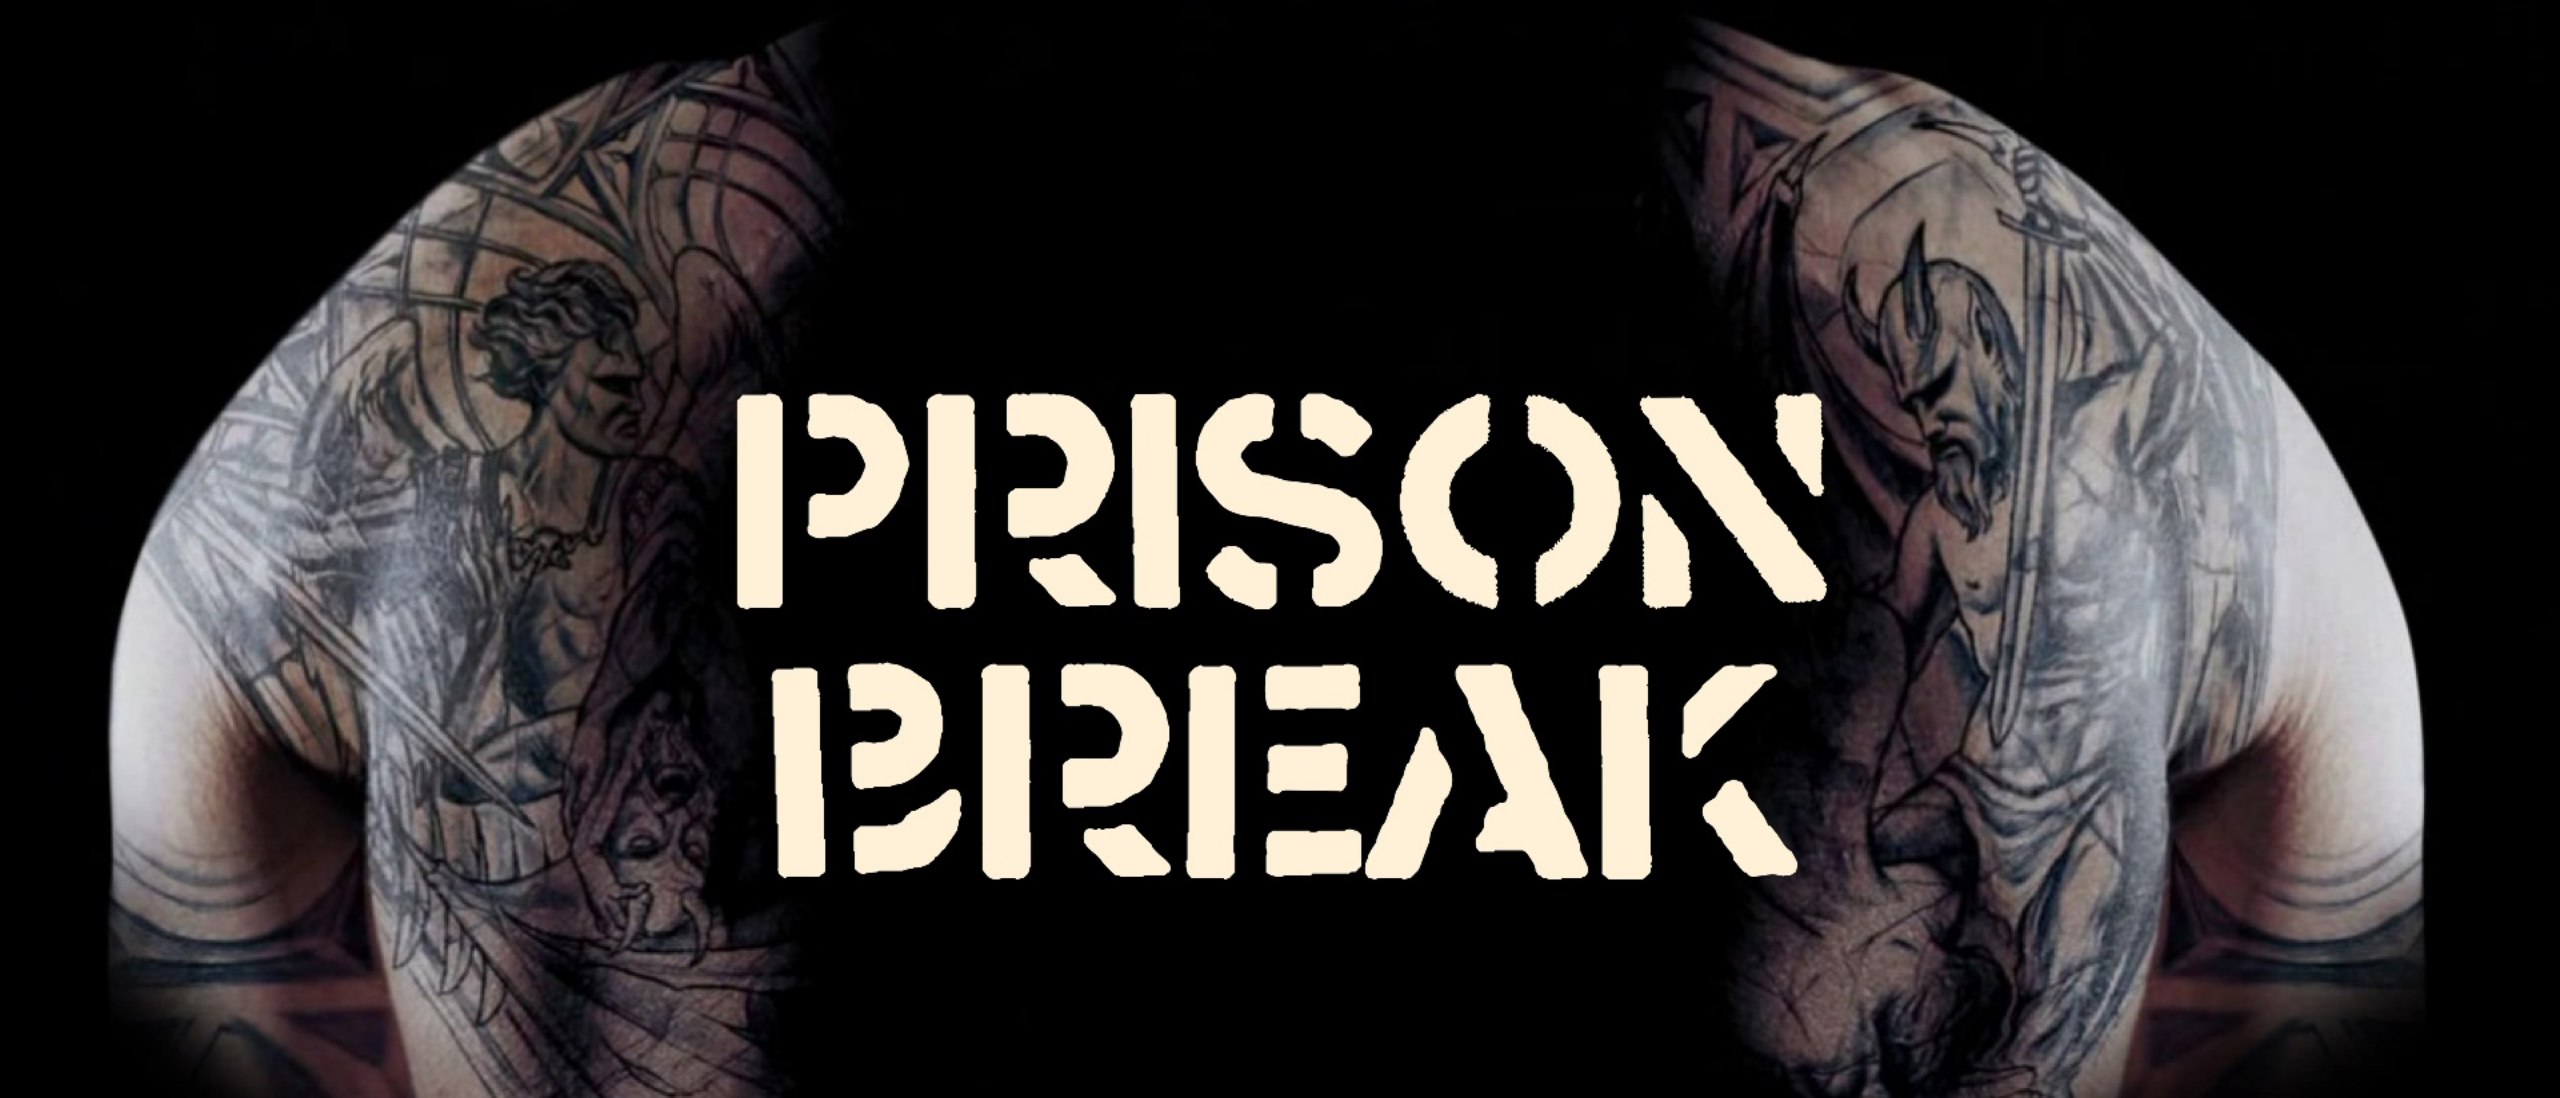 prison break s05e01 free online watch